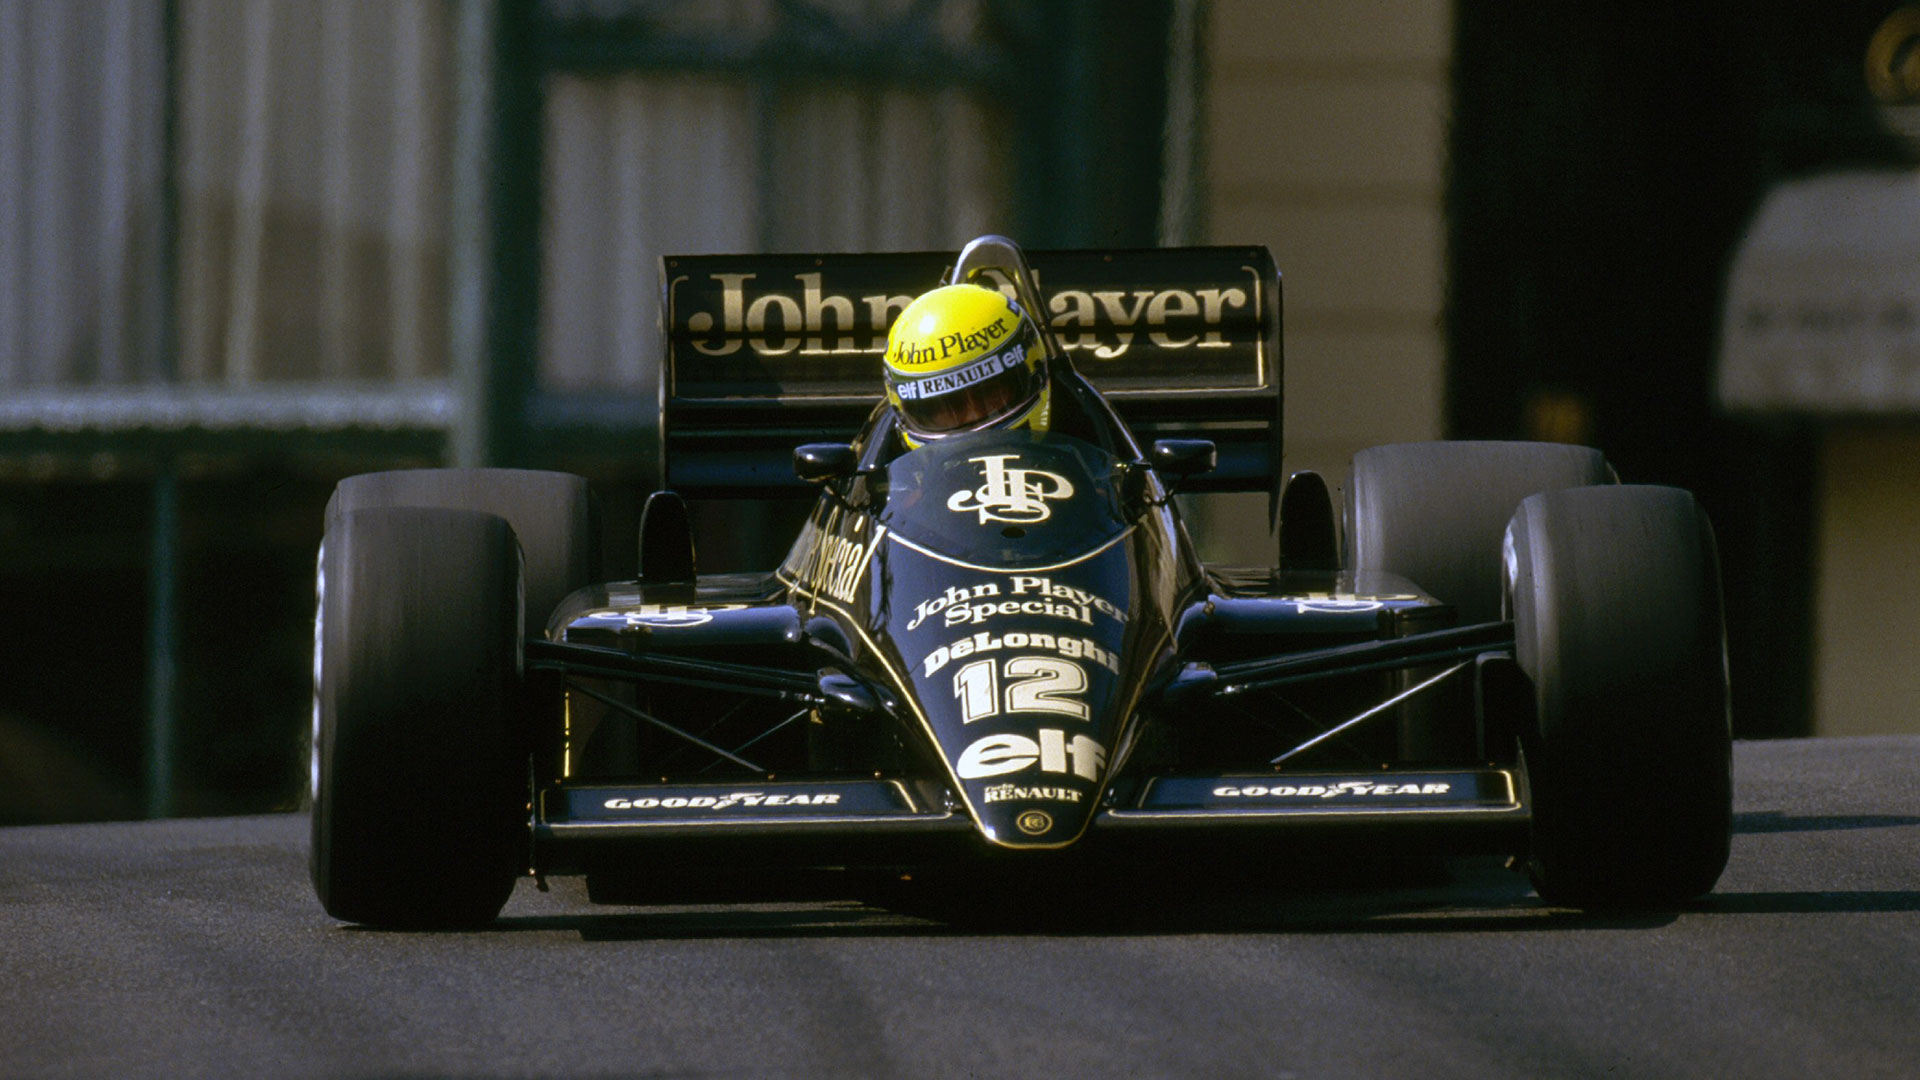 F1 Fansite Ayrton Senna HD Wallpaper Jpg